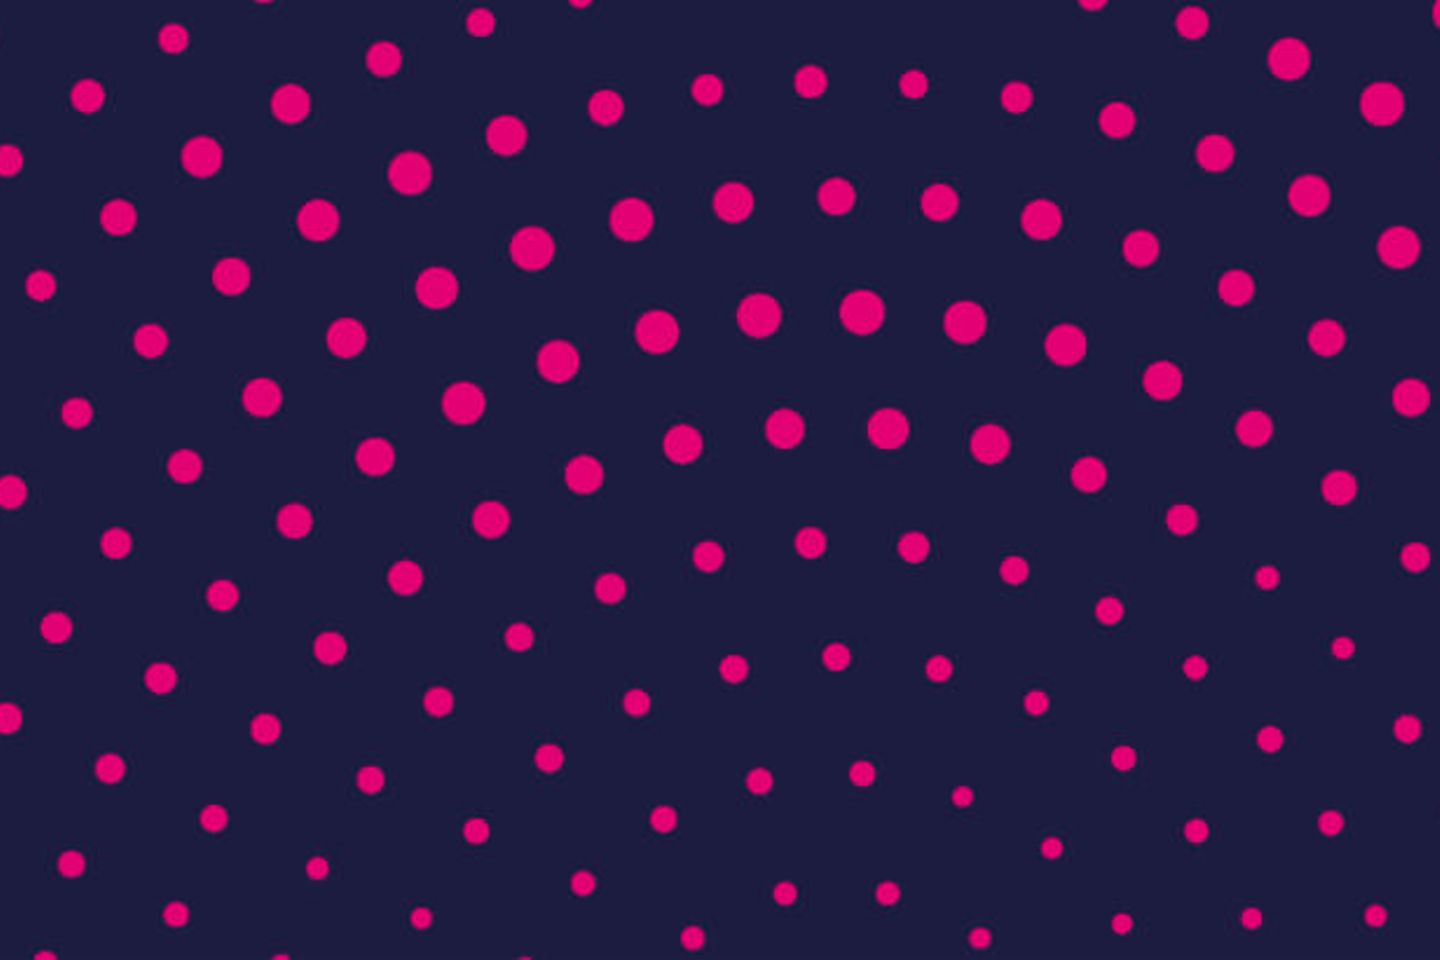 Pinke Punkte radial auf einem dunkelblauen Hintergrund angeordnet